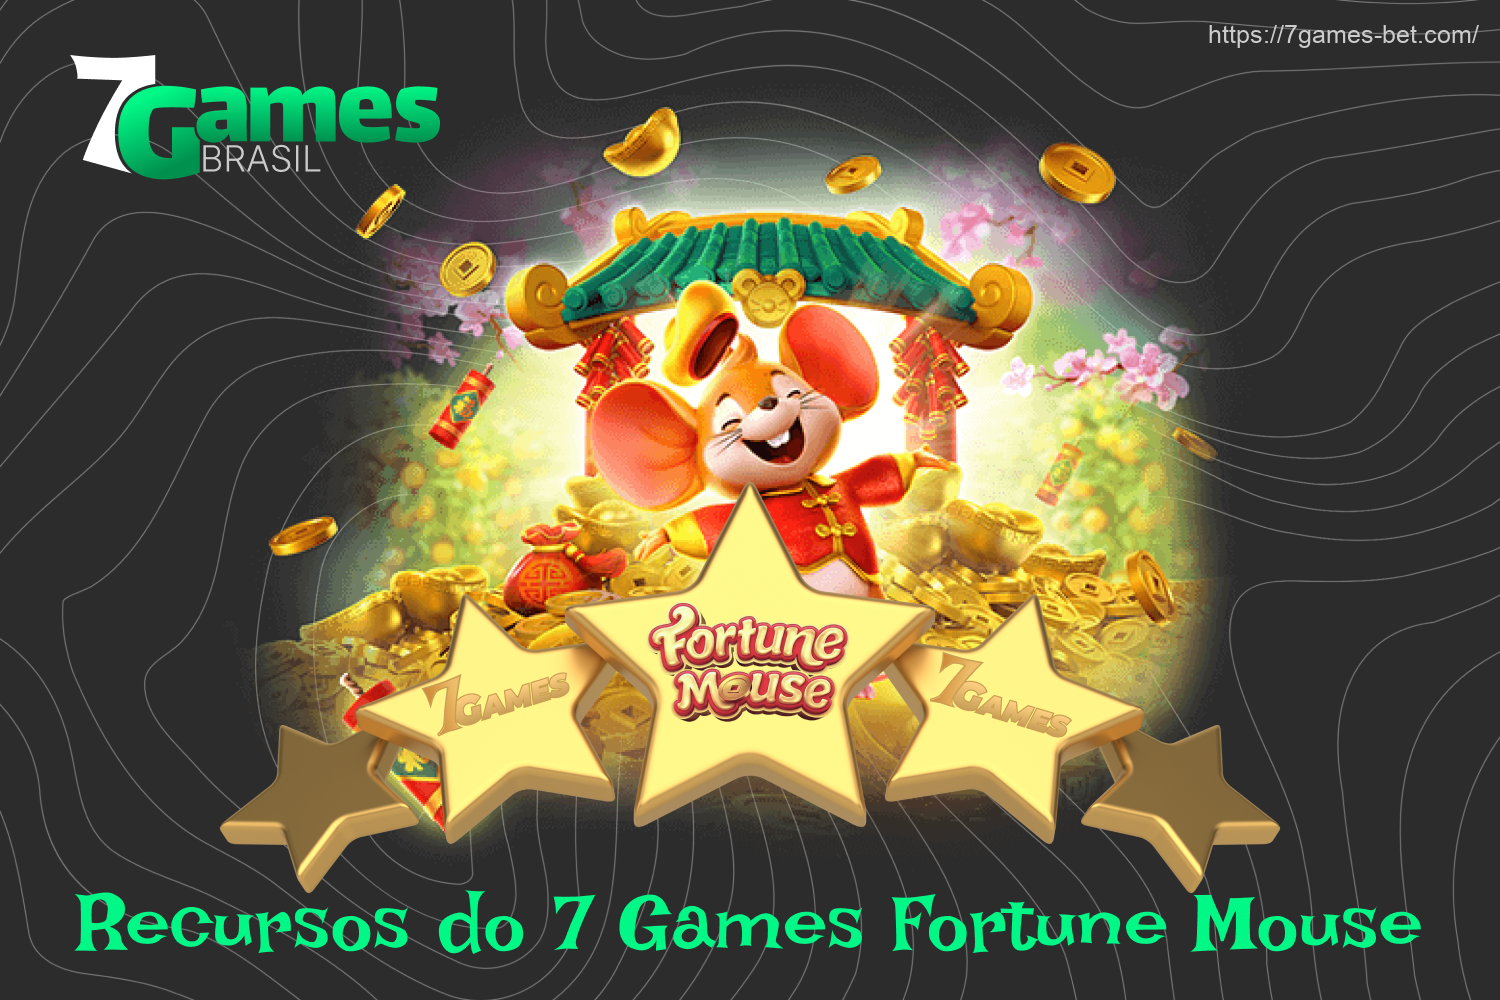 O 7Games Fortune Mouse é divertido de jogar graças aos muitos recursos embutidos, como símbolos selvagens e re-spins, que não apenas diversificam a jogabilidade, mas também aumentam as chances do brasileiro de ganhar dinheiro